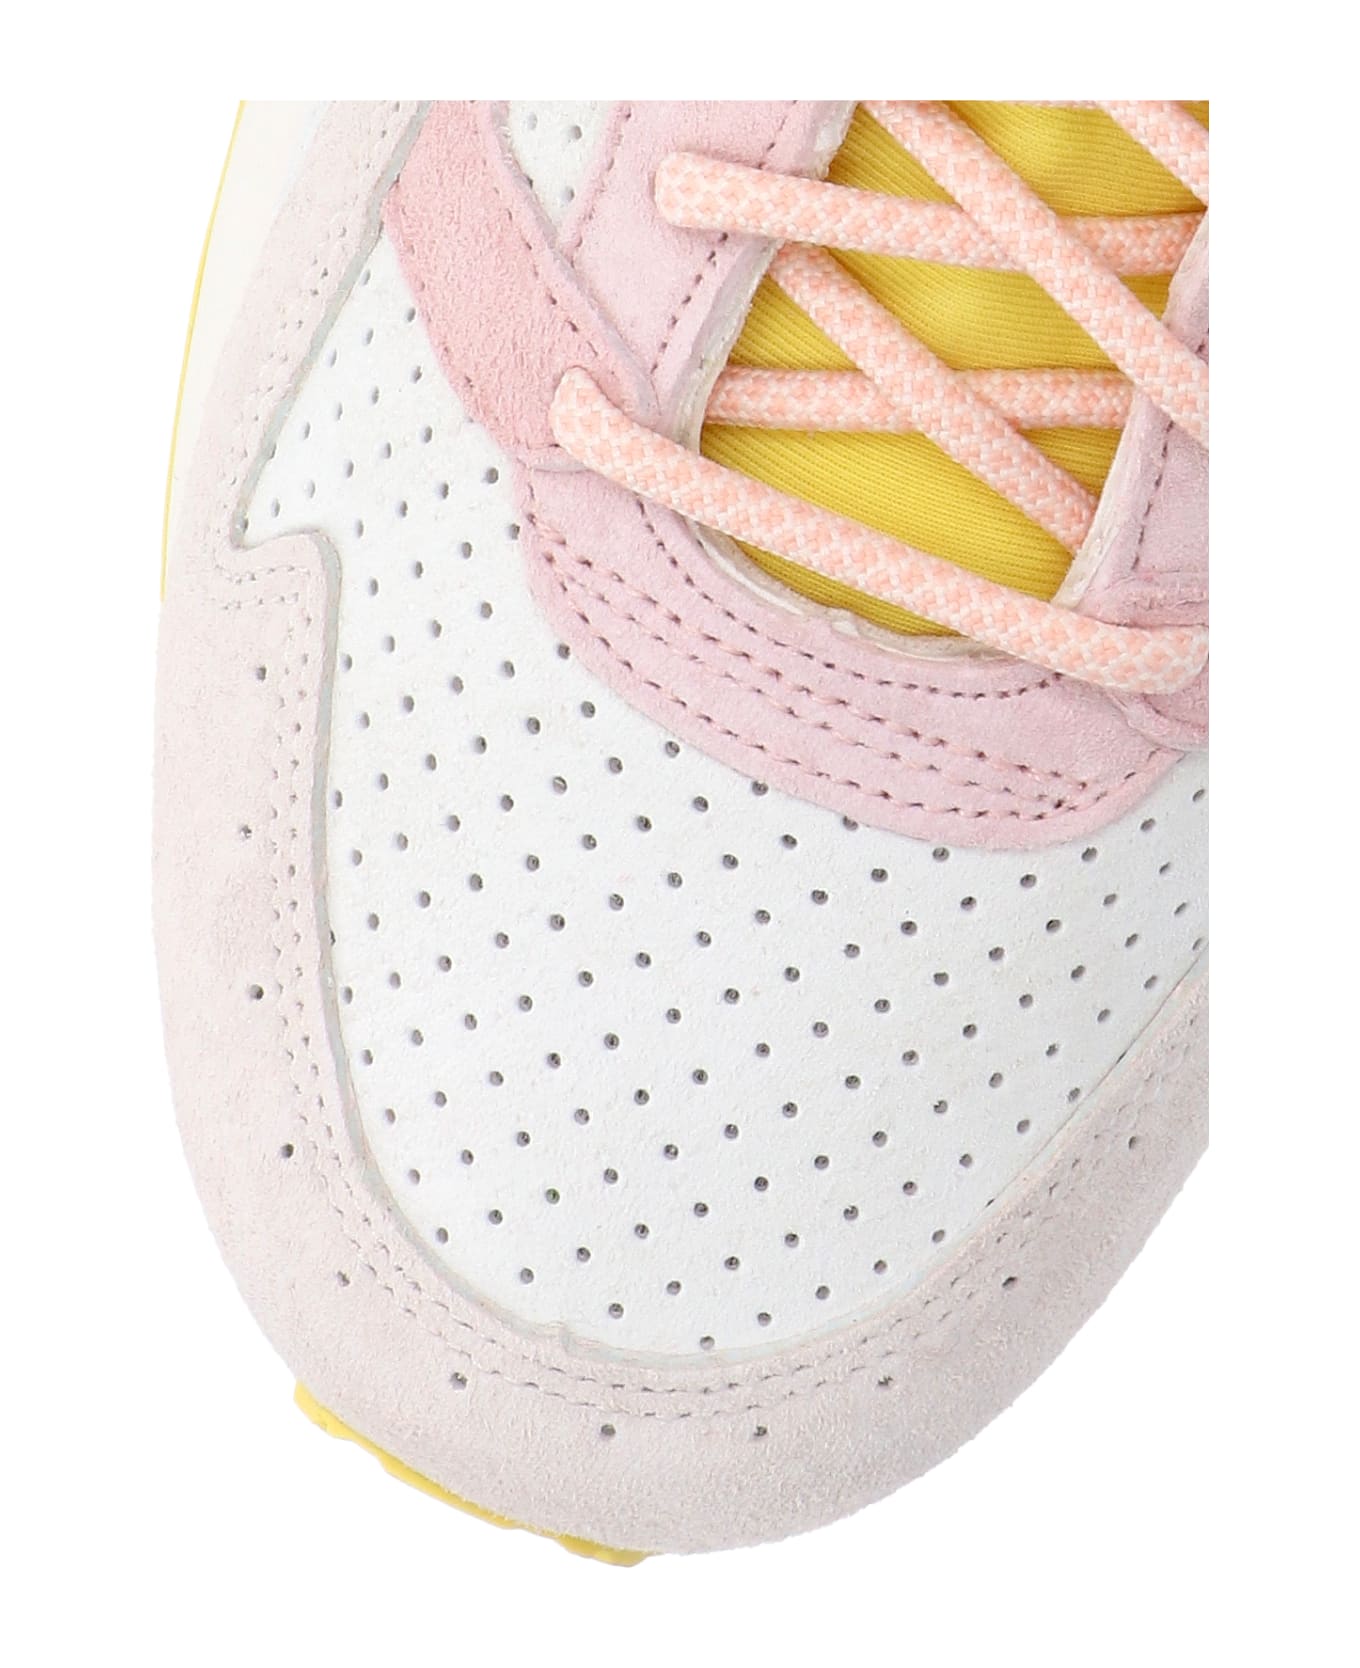 Asics 'gel-lyte V' Sneakers - Multicolor